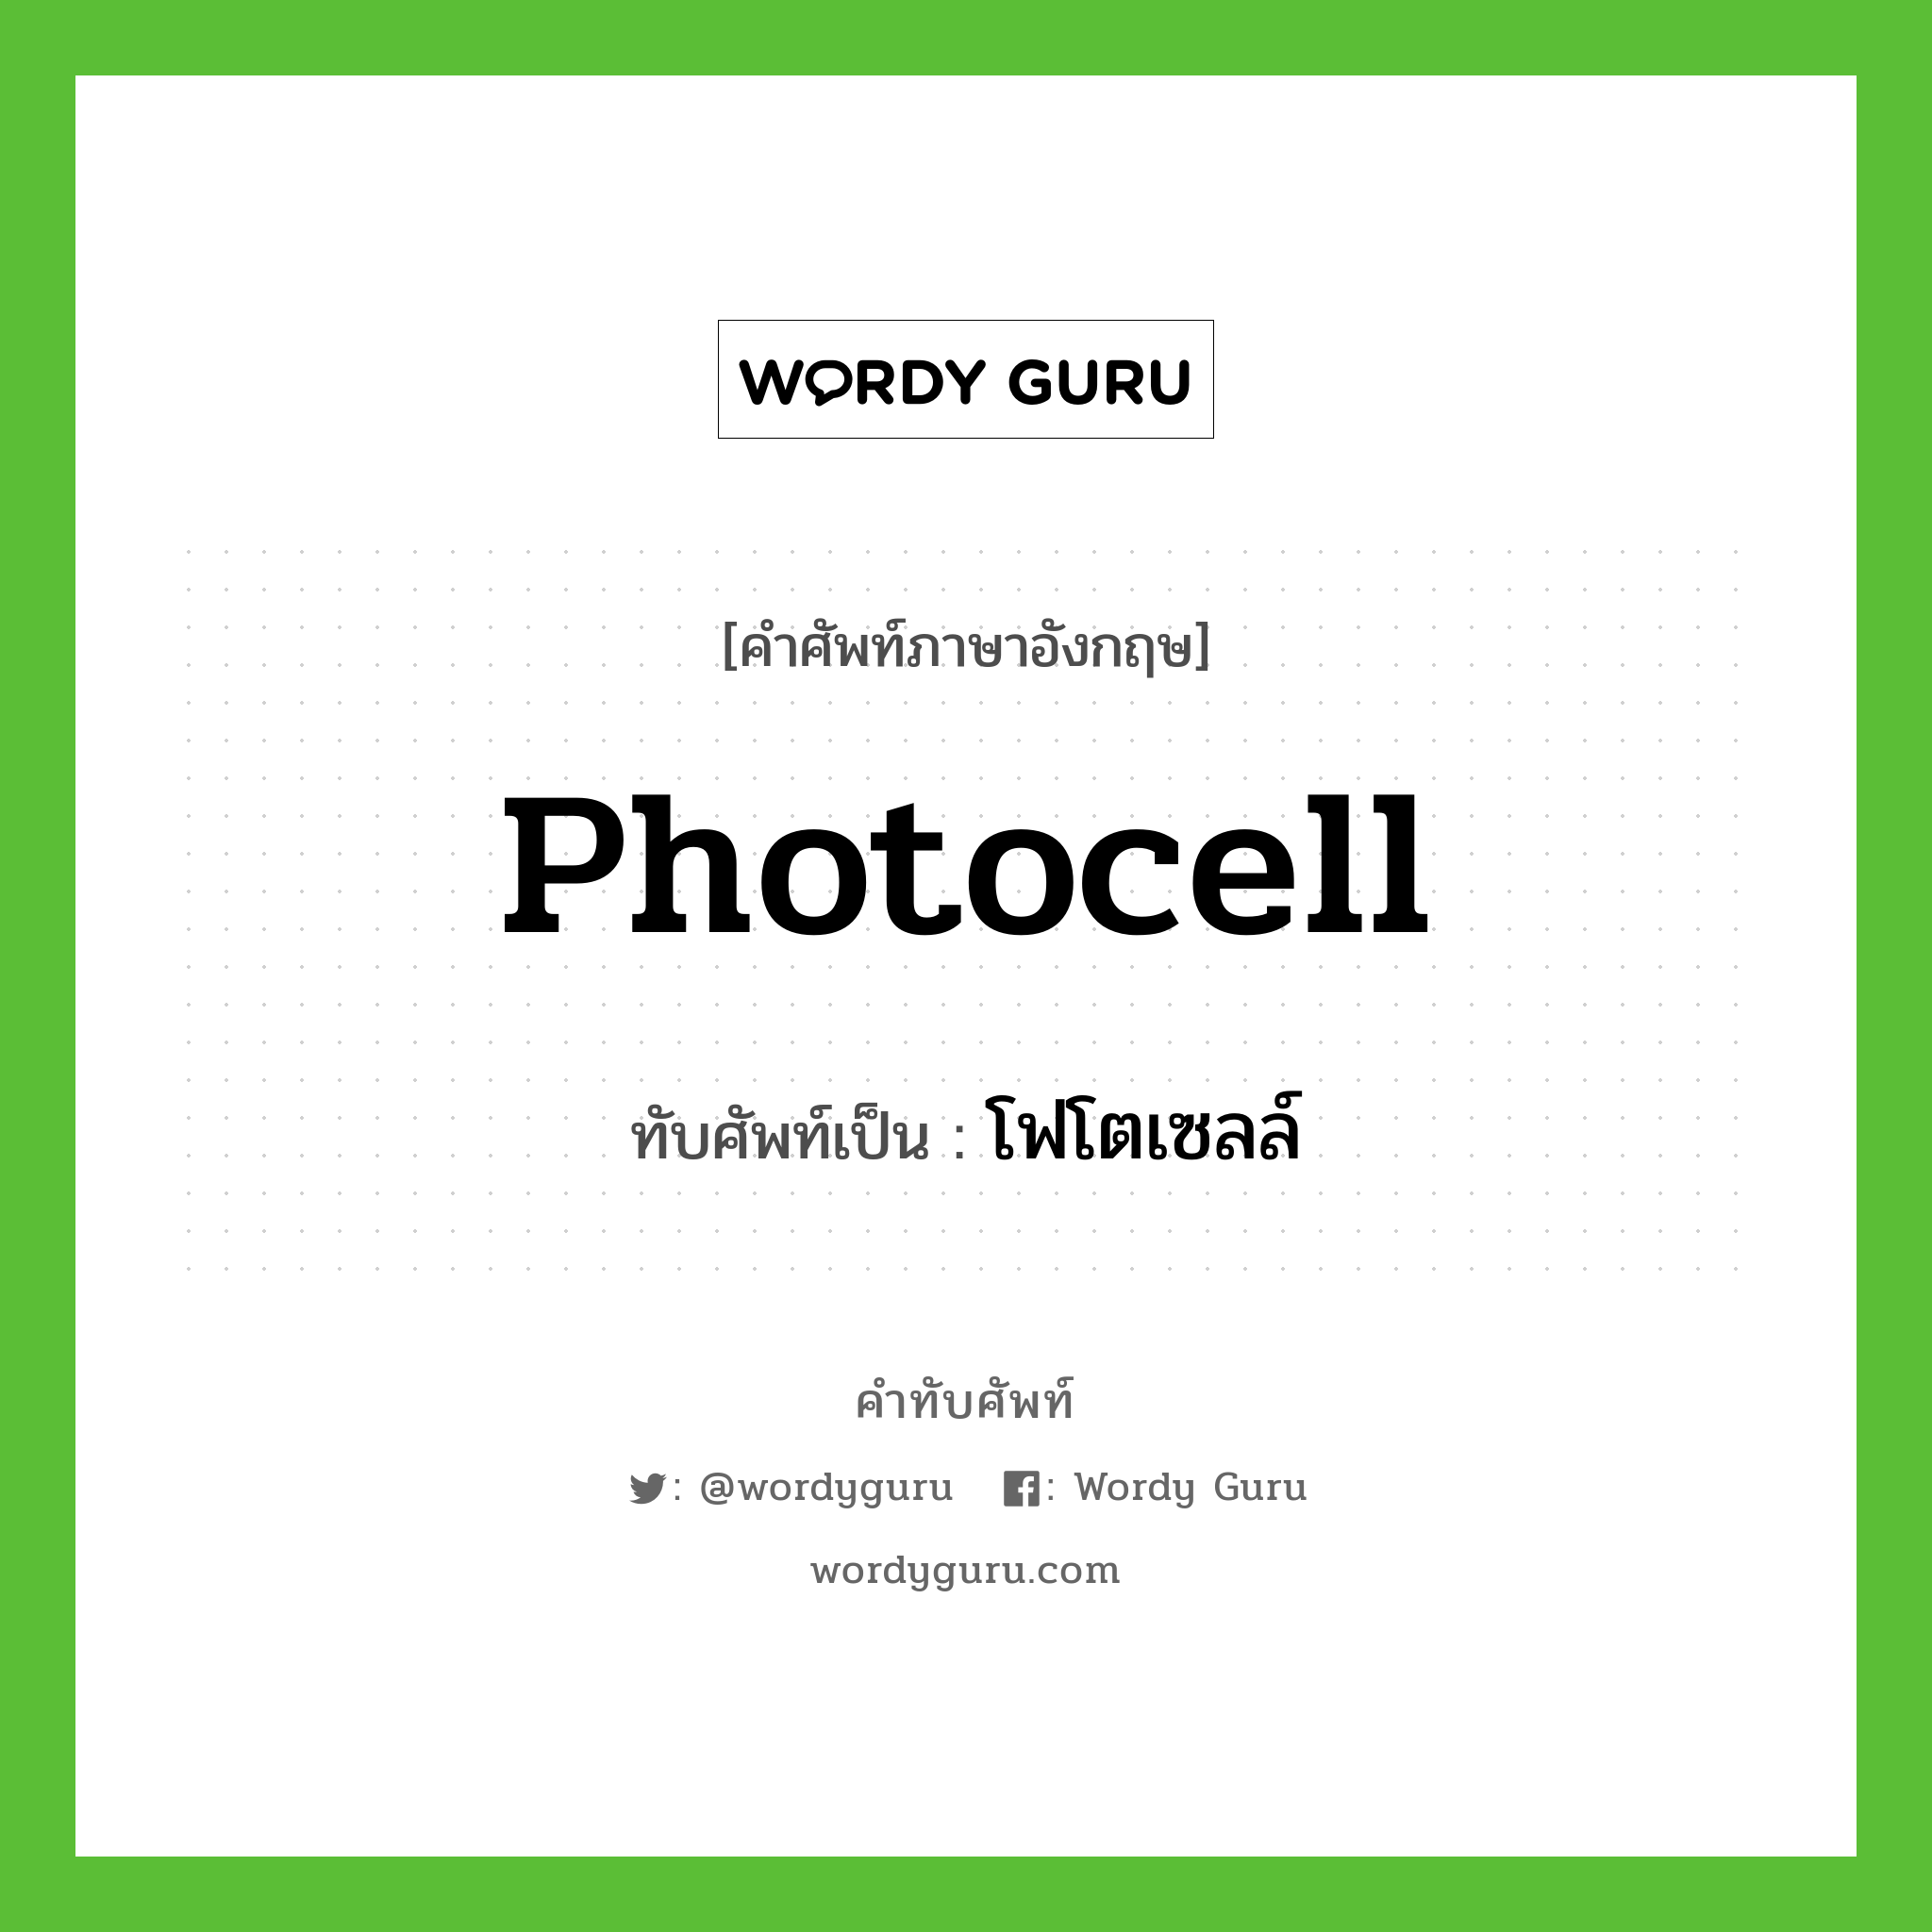 photocell เขียนเป็นคำไทยว่าอะไร?, คำศัพท์ภาษาอังกฤษ photocell ทับศัพท์เป็น โฟโตเซลล์